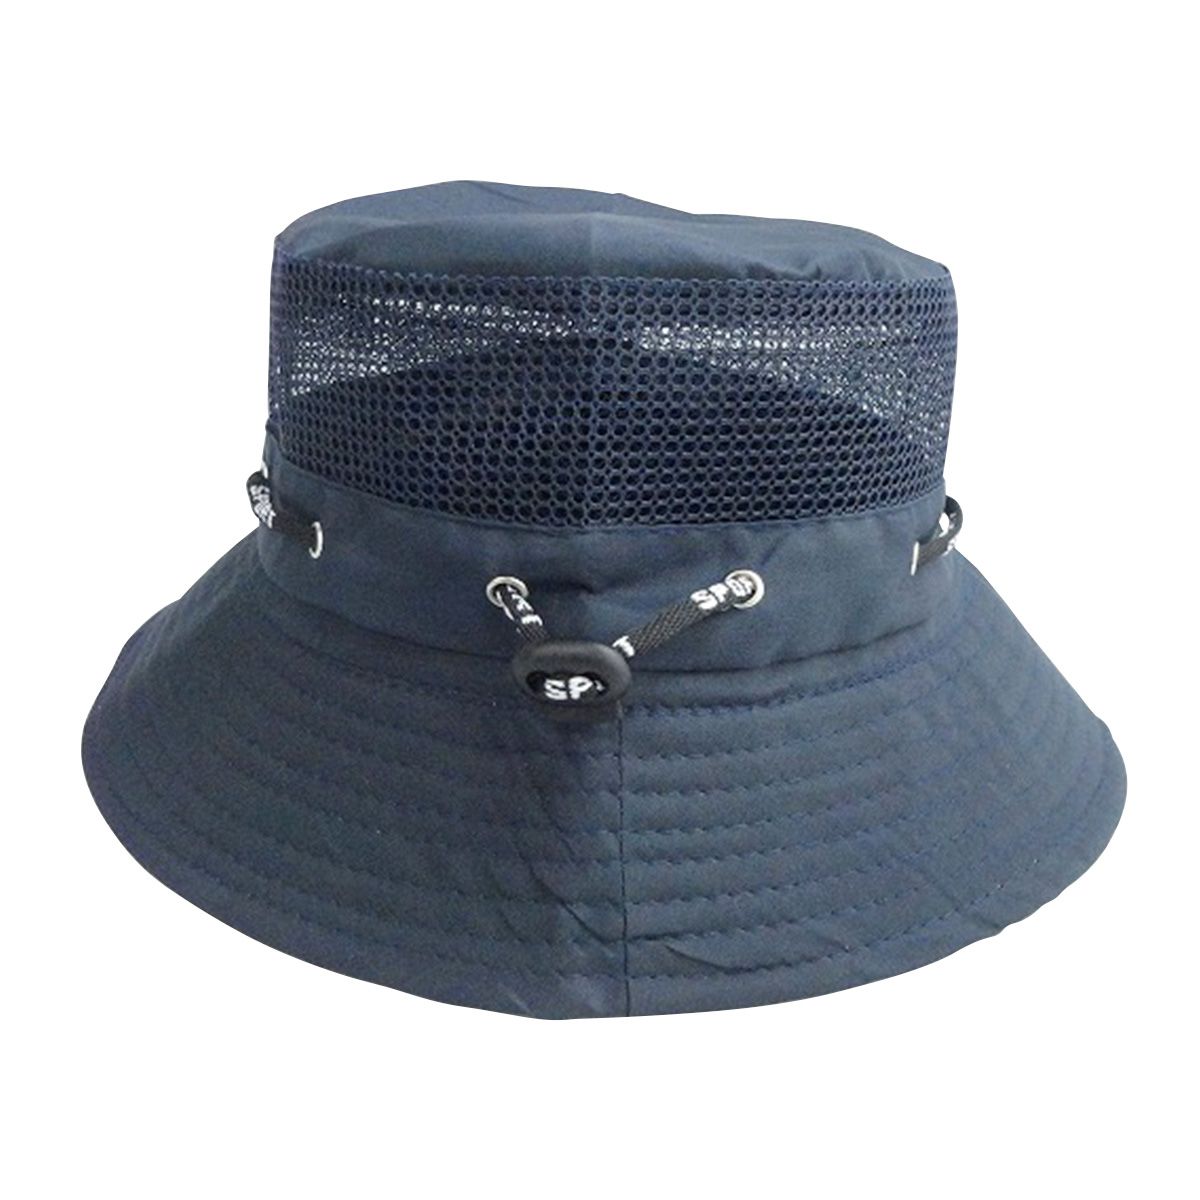 【在庫限り】帽子 つば広 夏用 メッシュハット ネイビー 365575